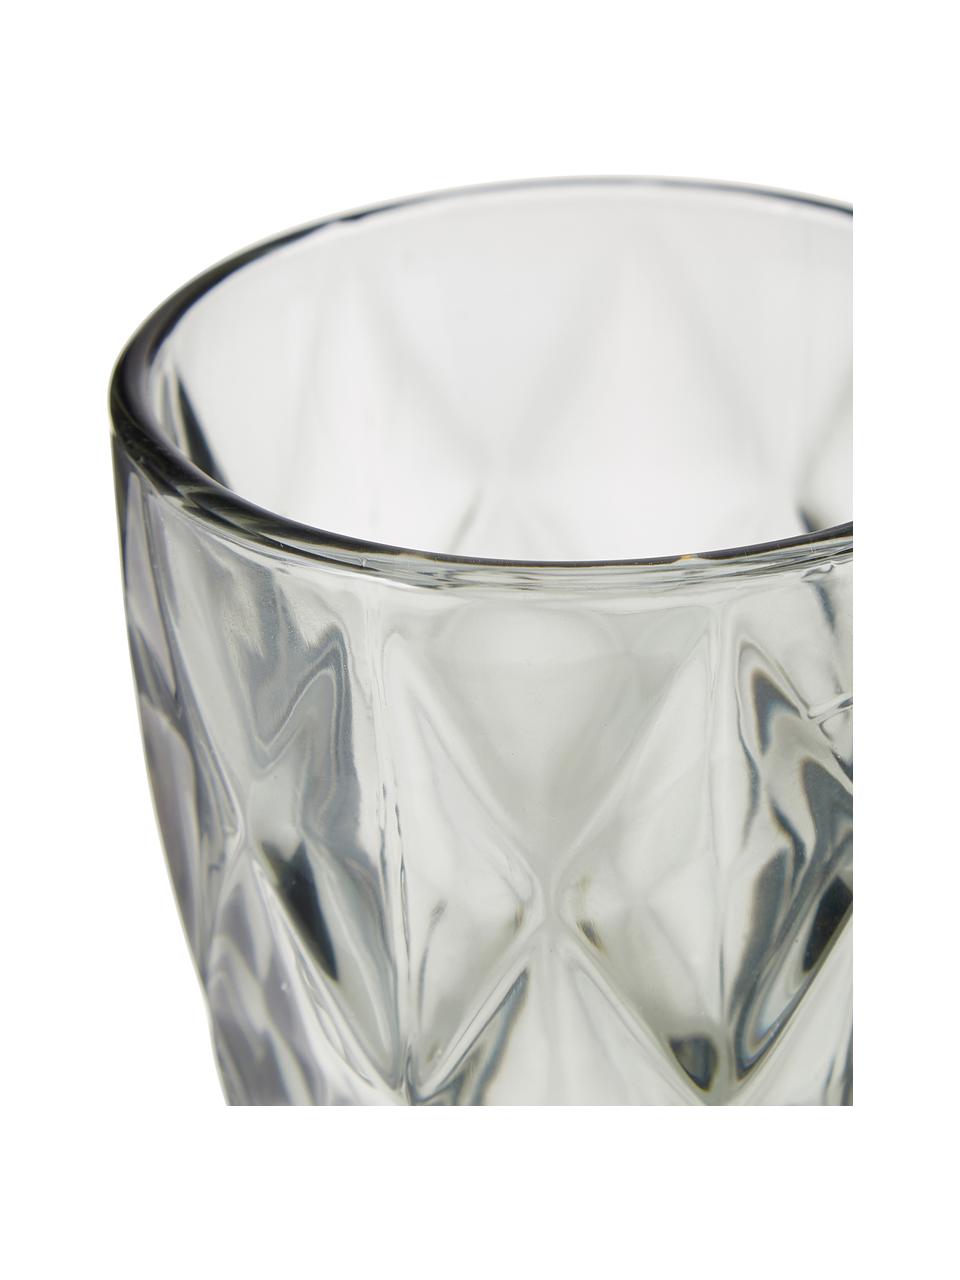 Waterglazen Colorado met structuurpatroon, 4 stuks, Glas, Grijs, transparant, Ø 8 x H 10 cm, 260 ml